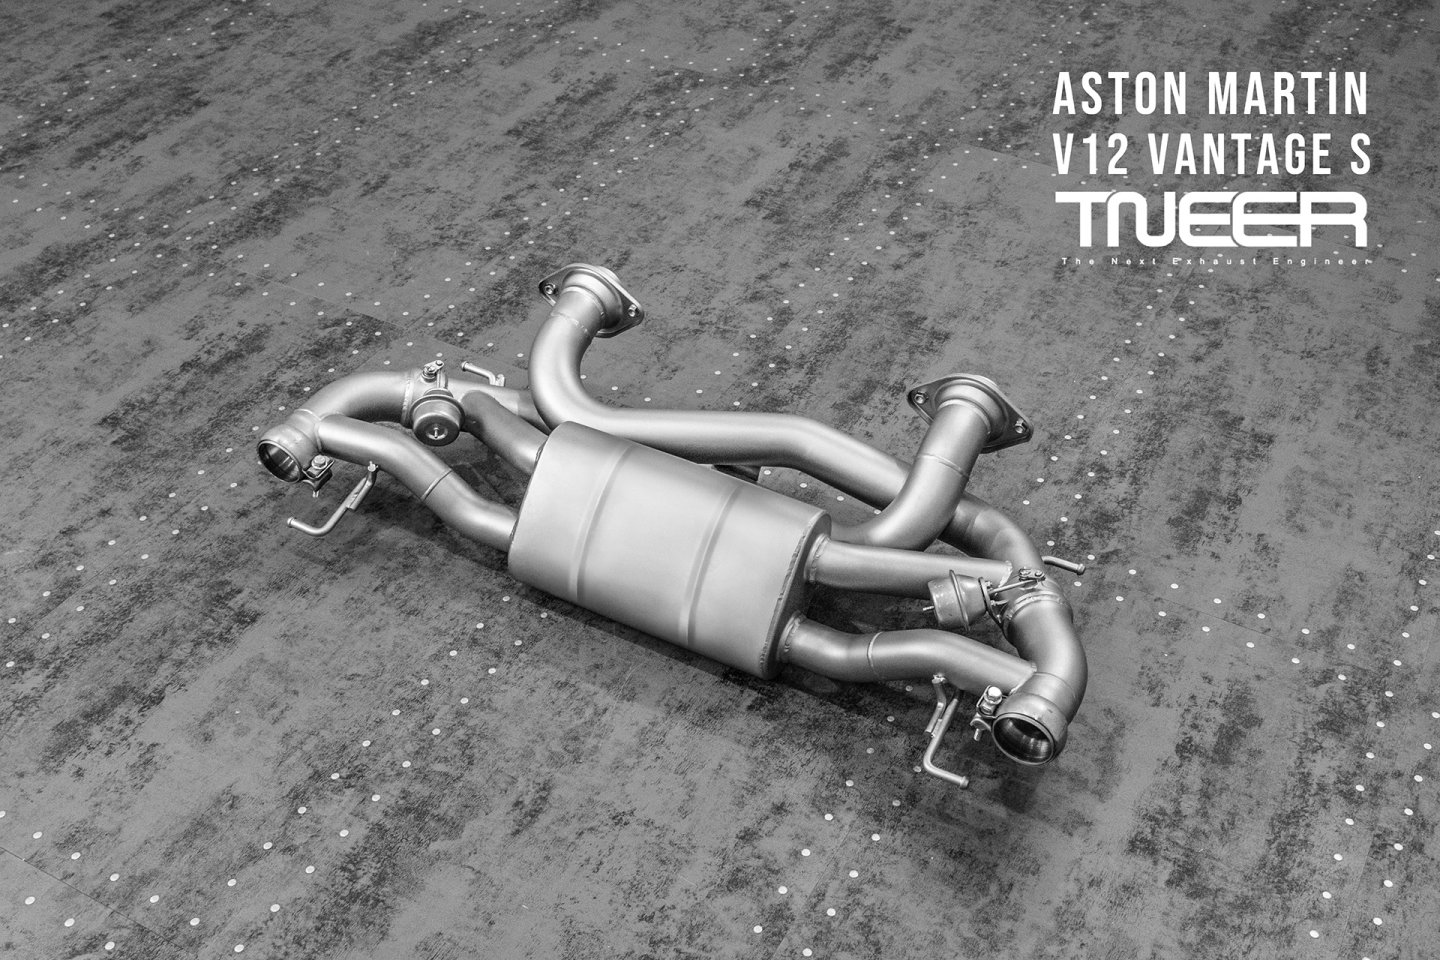 Aston Martin V12 Vantage S TNEER Exhaust System